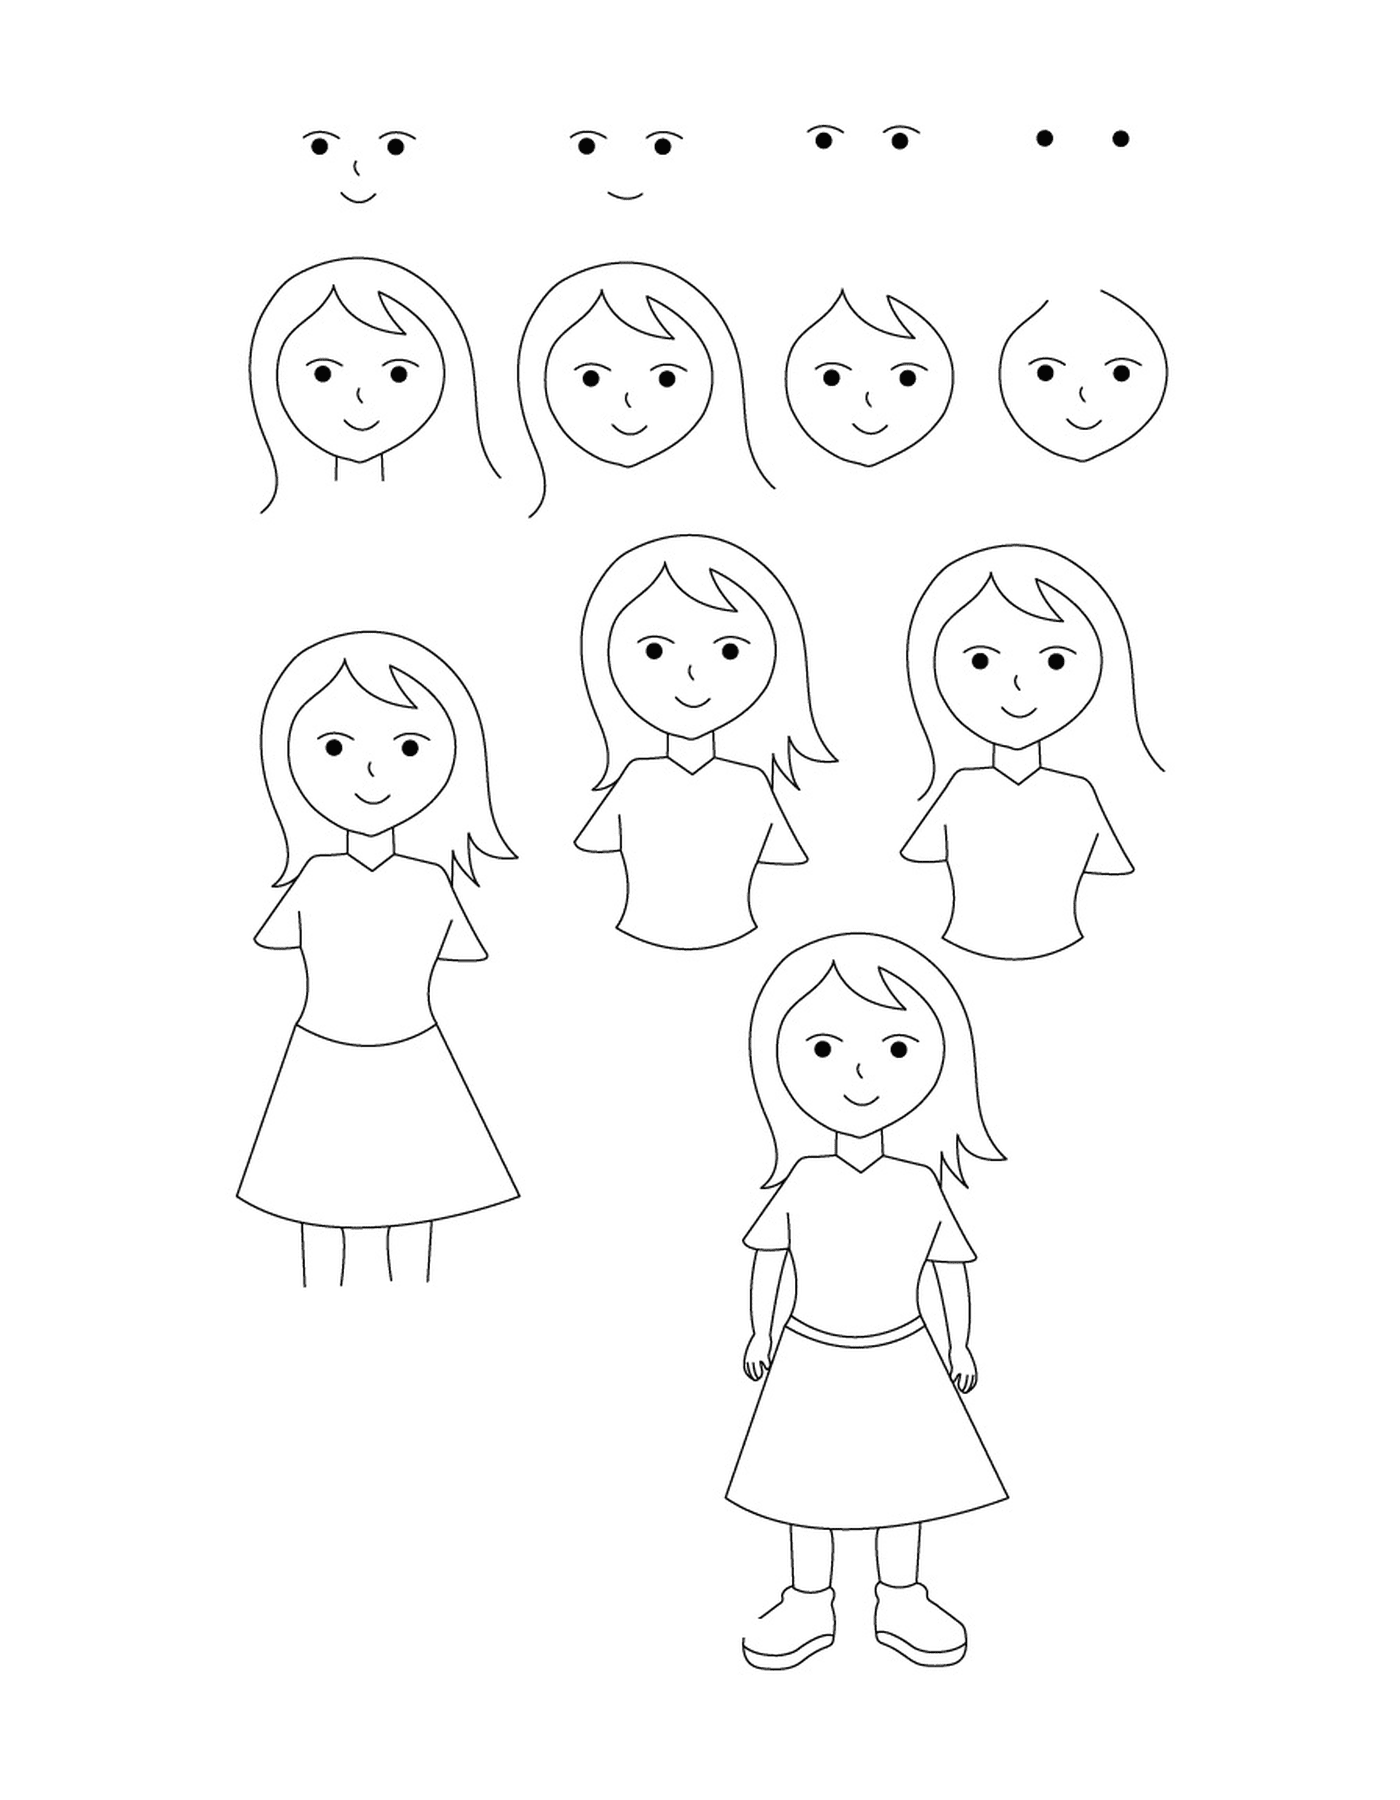  كيف يمكن رسم فتاة 